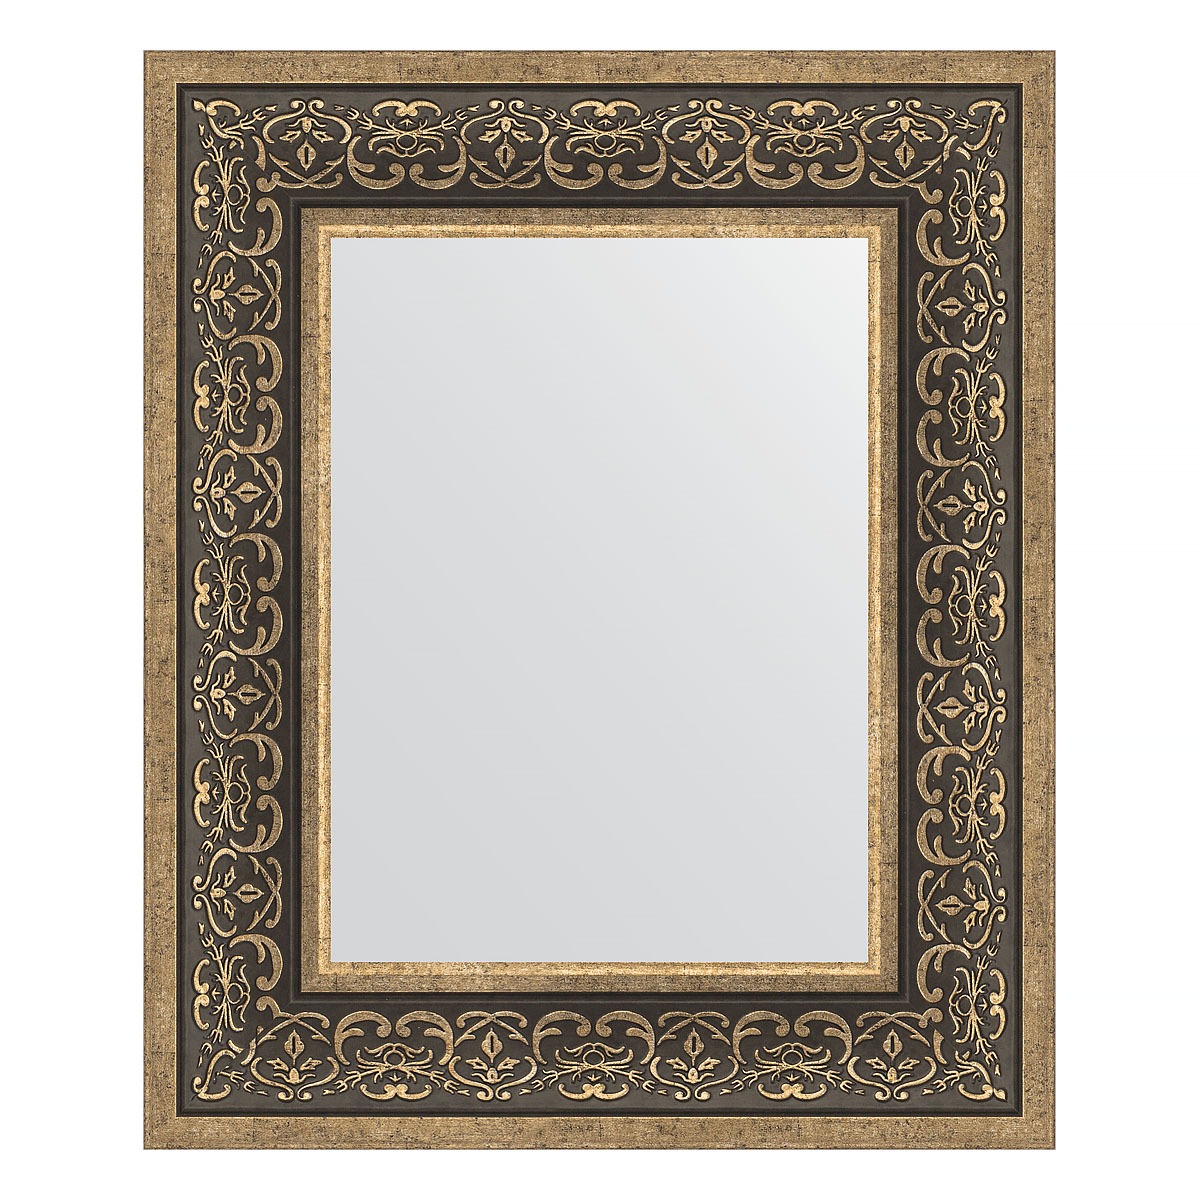 Зеркало в багетной раме Evoform вензель серебряный 101 мм 49х59 см зеркало 49х59 см травленая бронза evoform exclusive by 3368